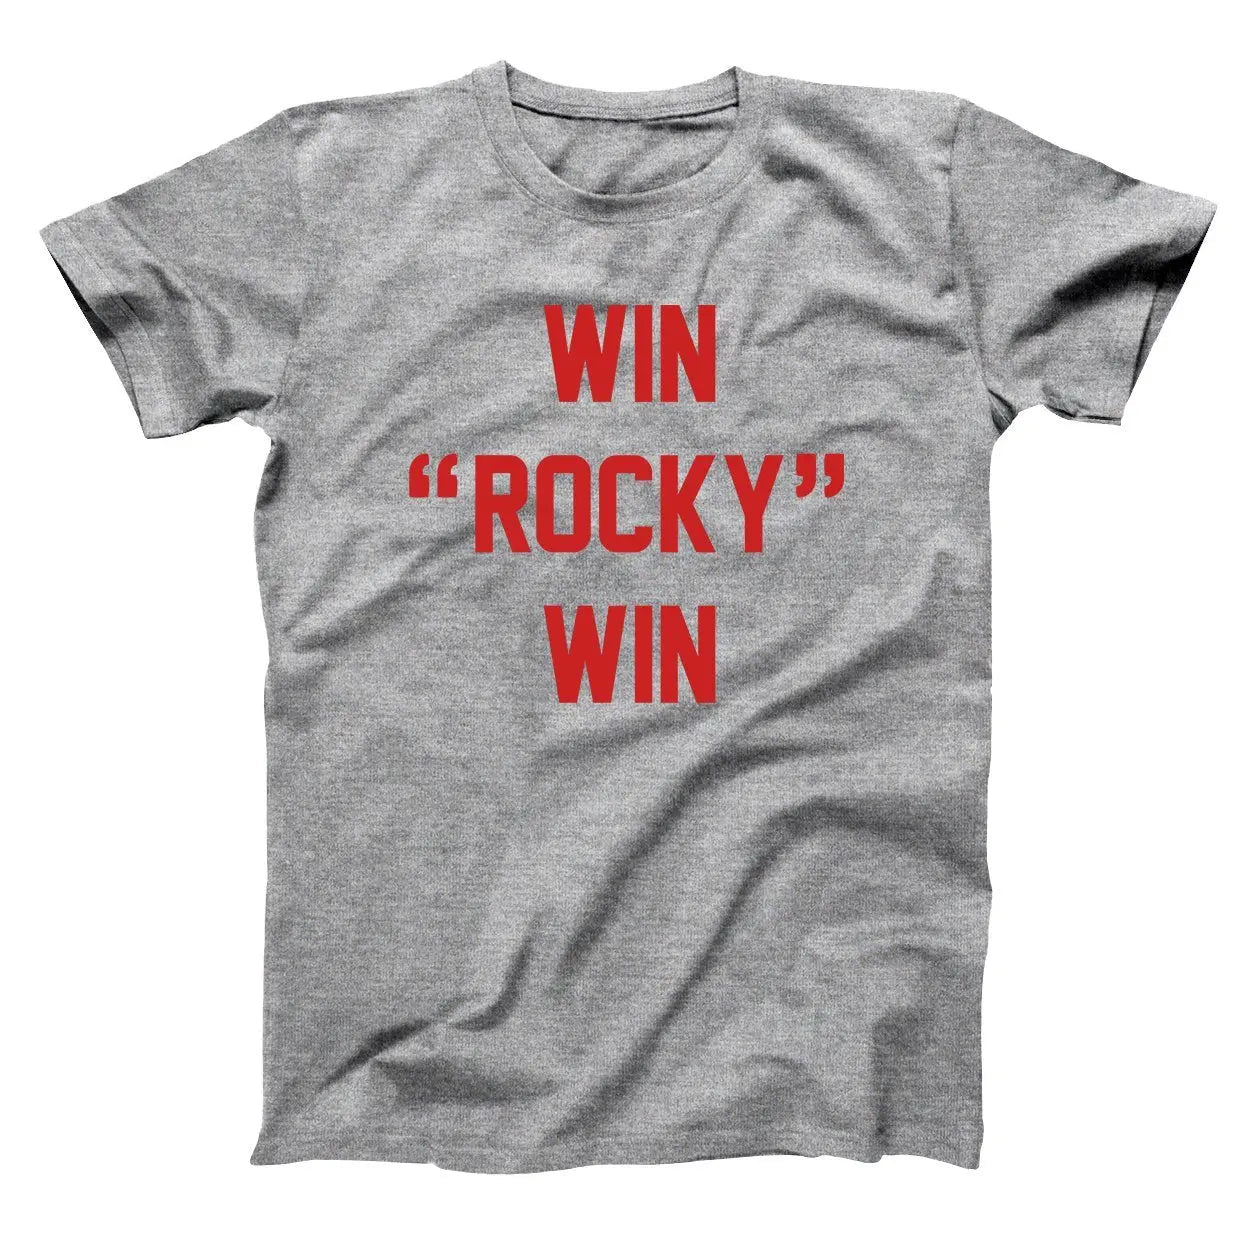 Win Rocky Win Tshirt - Donkey Tees